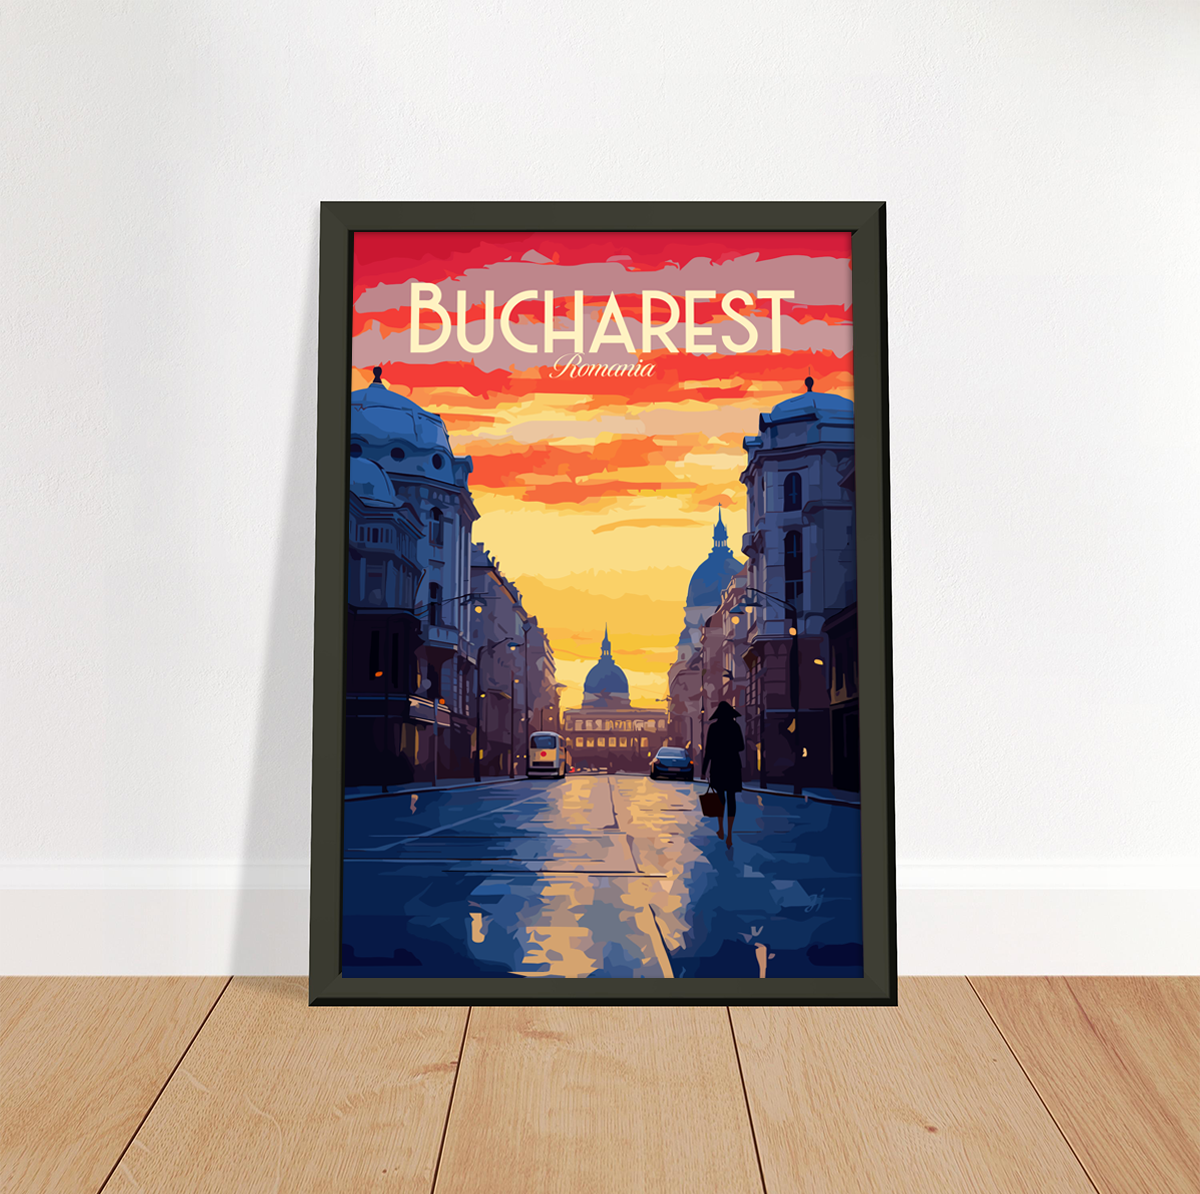 Bucharest poster by bon voyage design